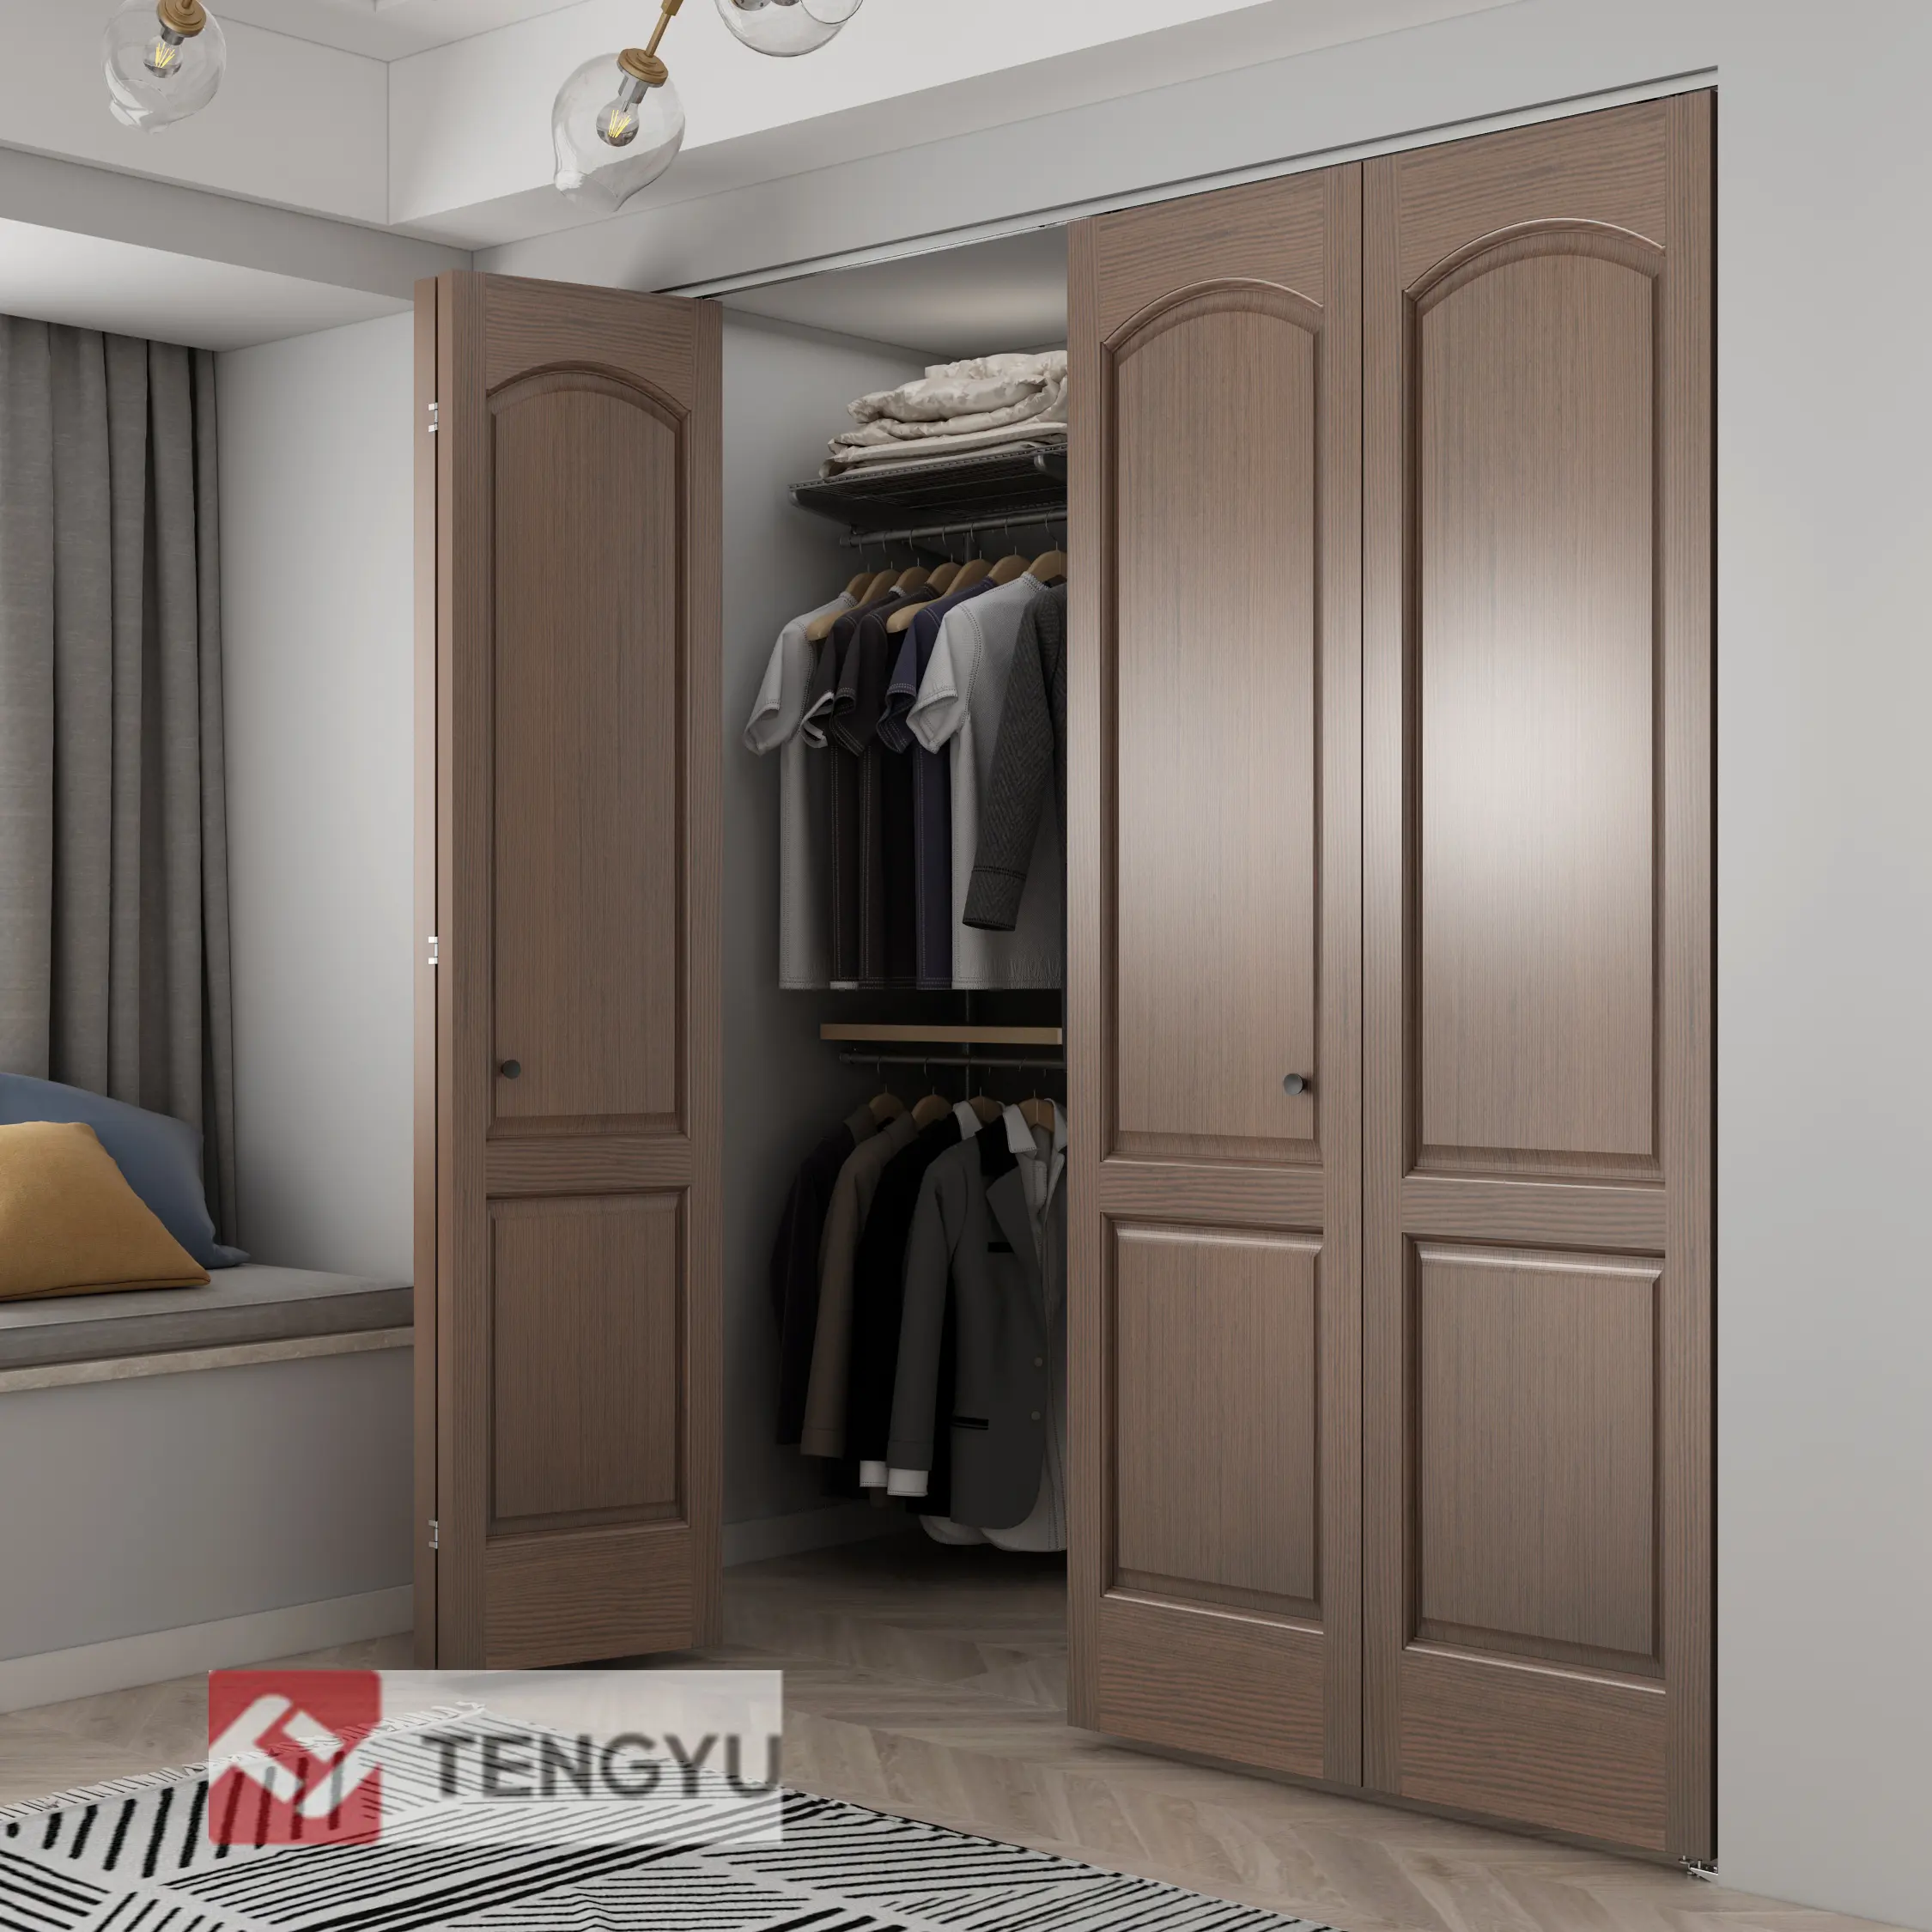 Tengyu Kit Hardware per porte a soffietto per armadio e guardaroba, sistema di porte scorrevoli interne